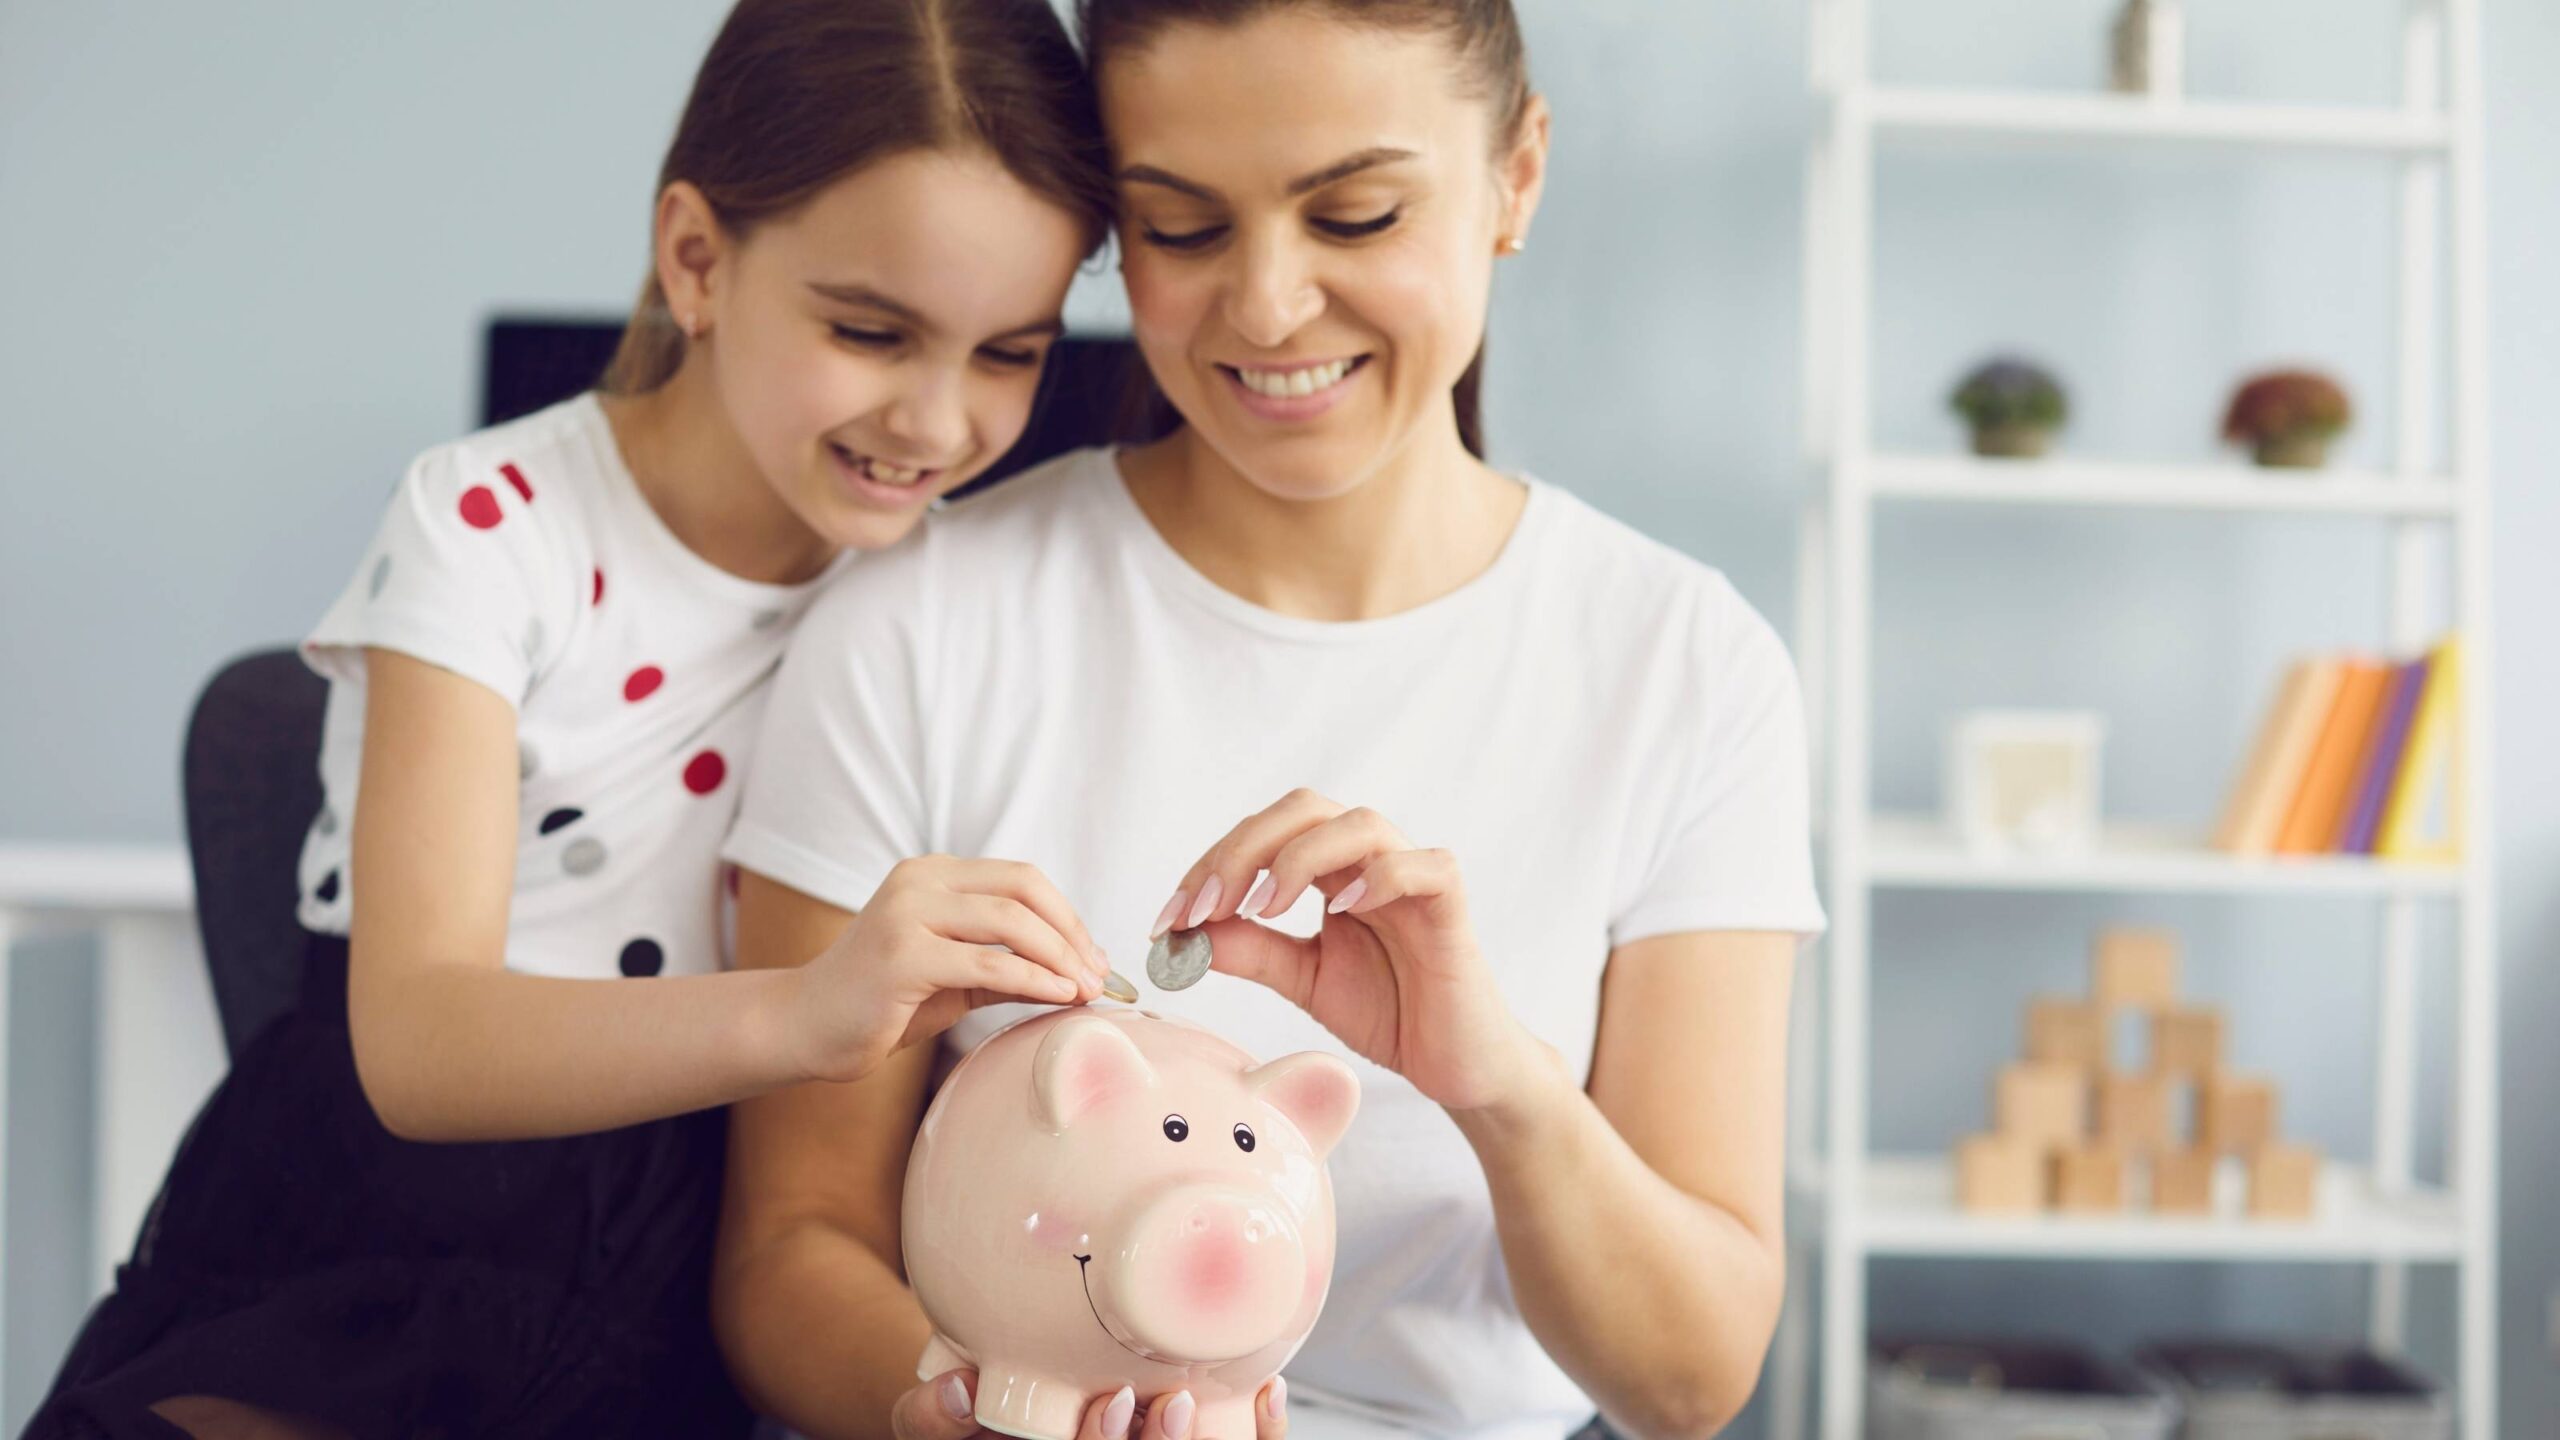 Garantiza el futuro de tus hijos con el ahorro COOPKIDS